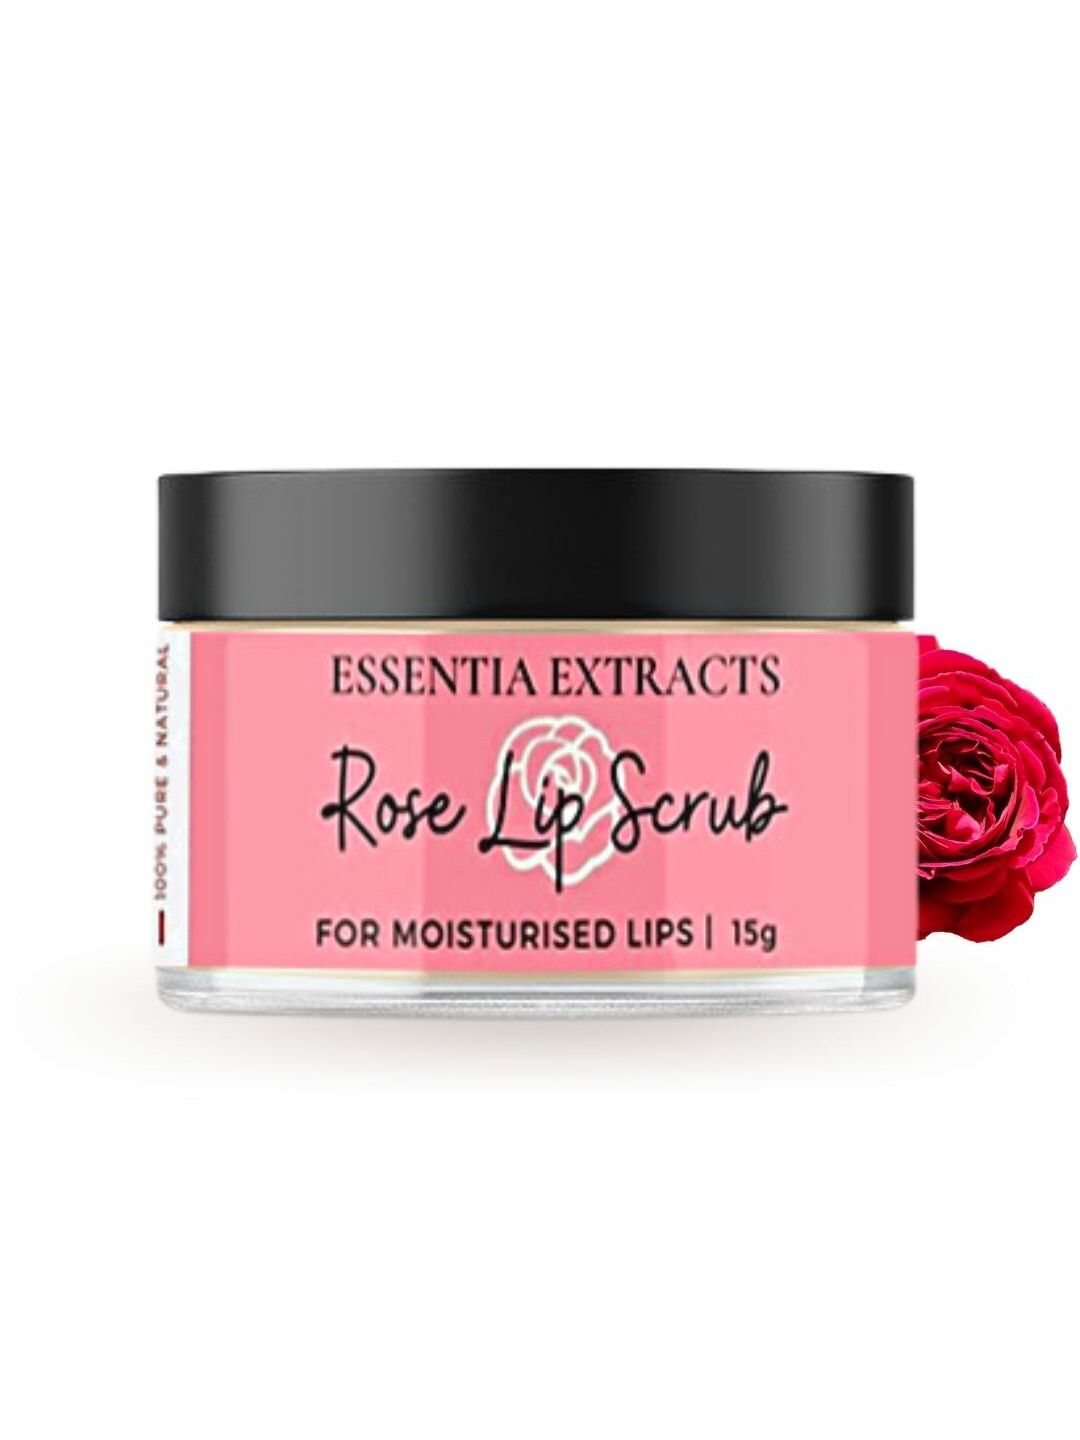 ESSENTIA EXTRACTS Rose Lip Scrub Price in India